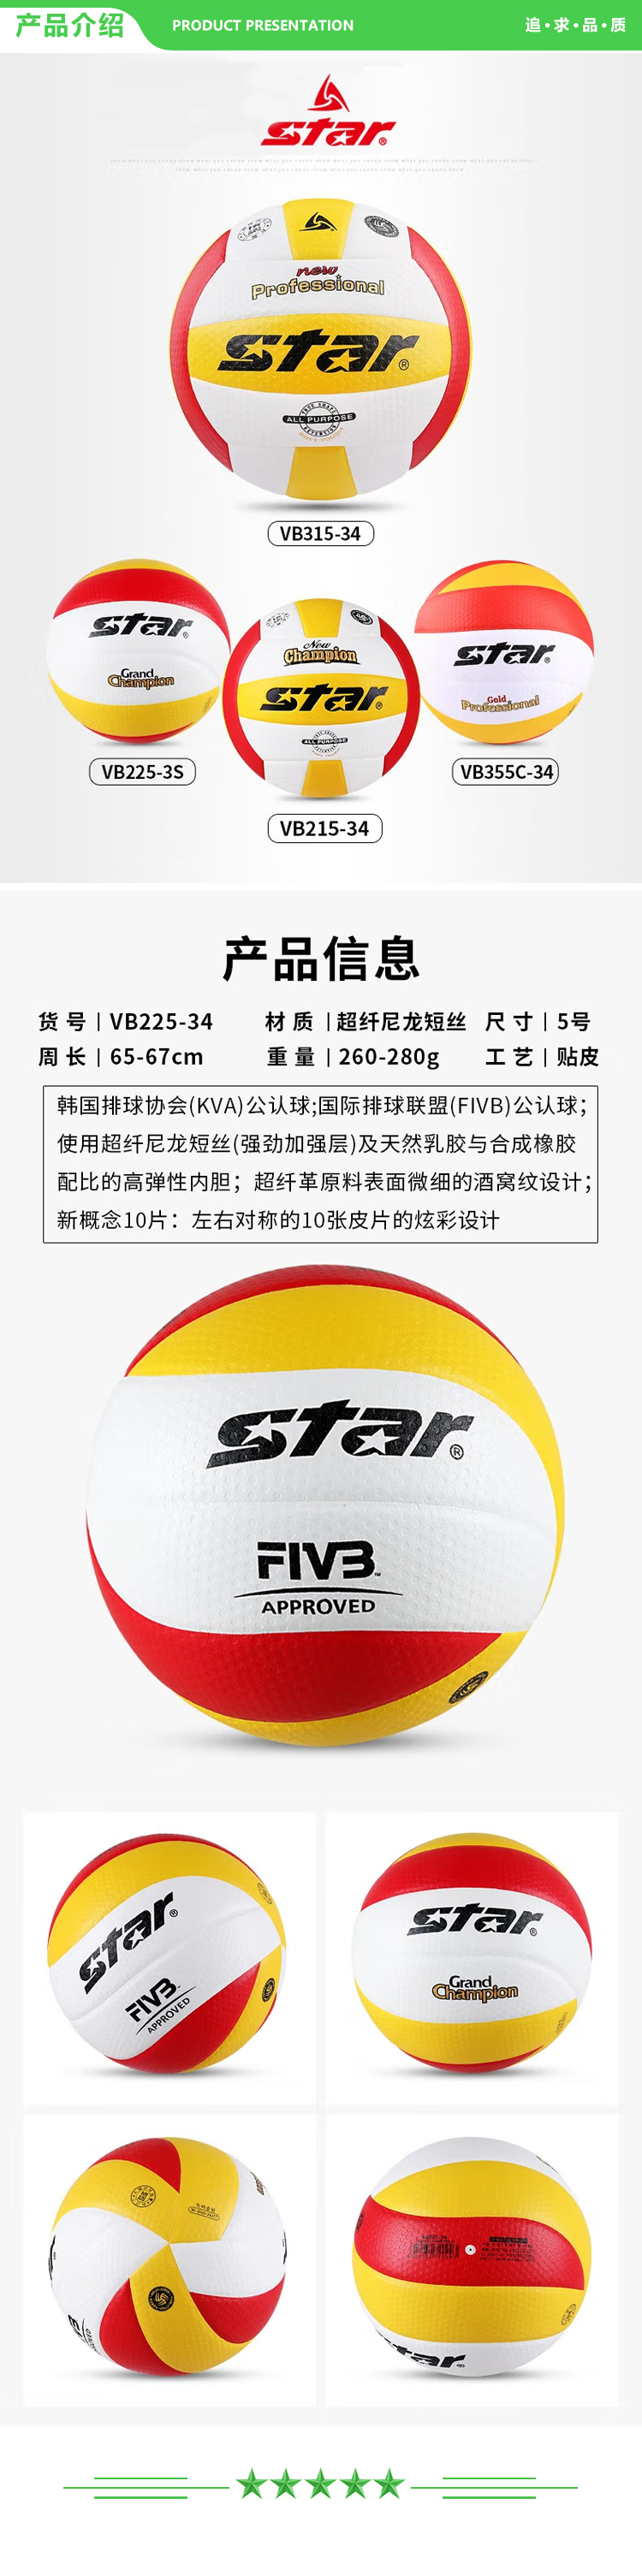 世达 star VB225-34【超纤革5号（FIVB)公认球】5号排球 比赛用球 硬排球皮革材质柔软耐磨比赛.jpg